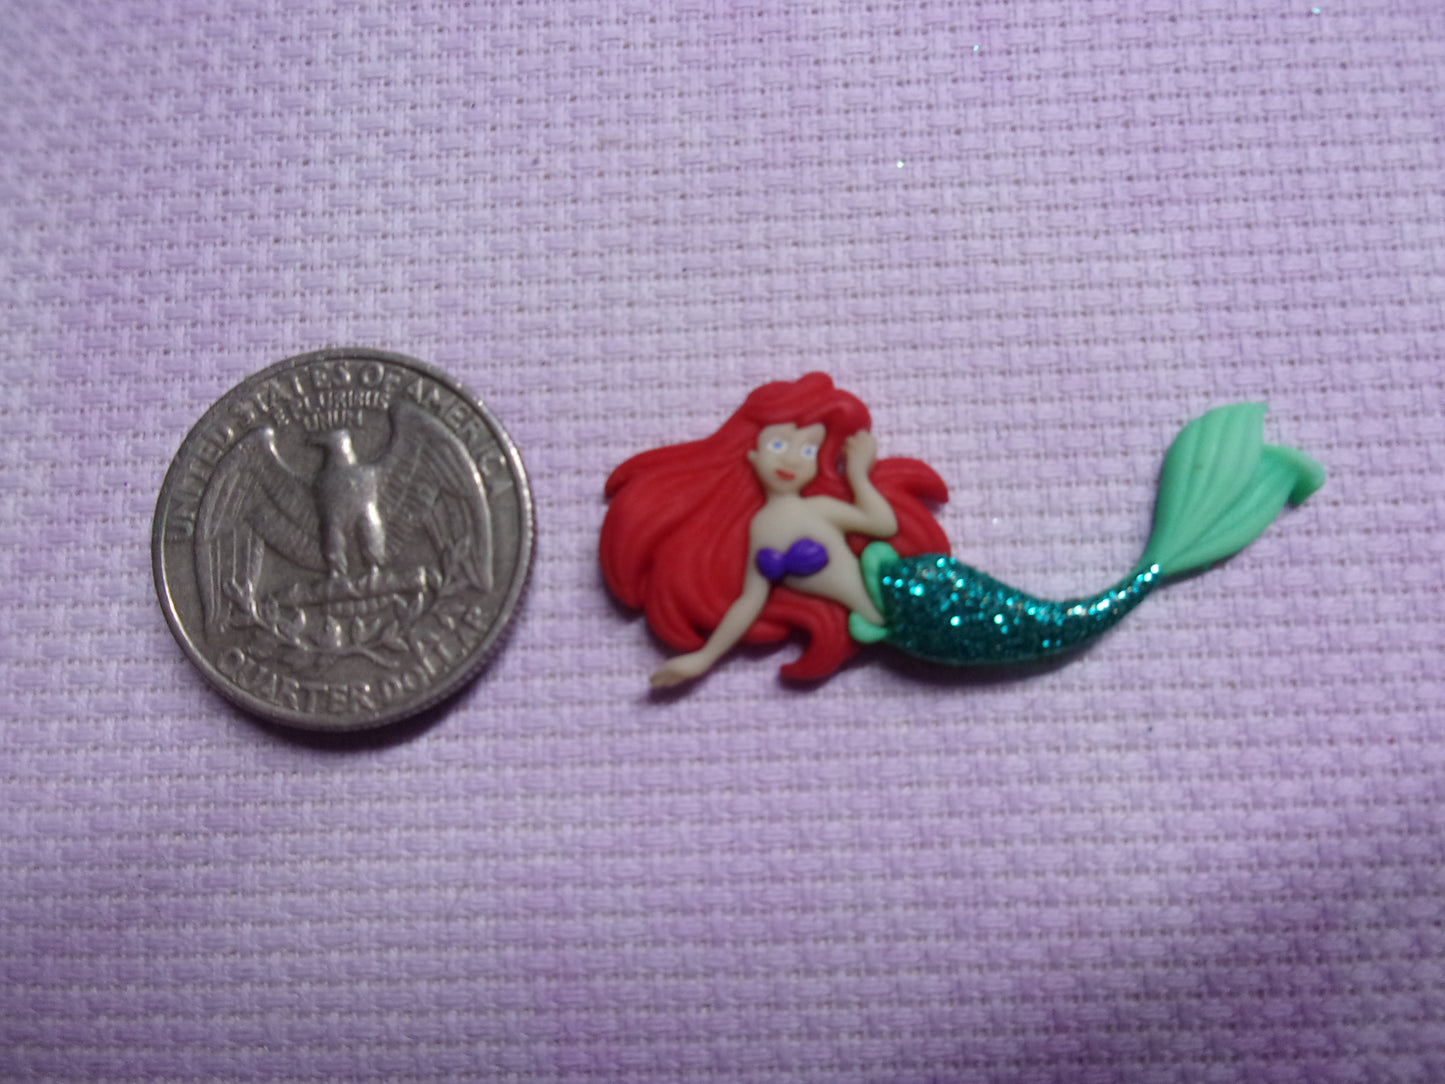 Little Mermaid Needle Minders